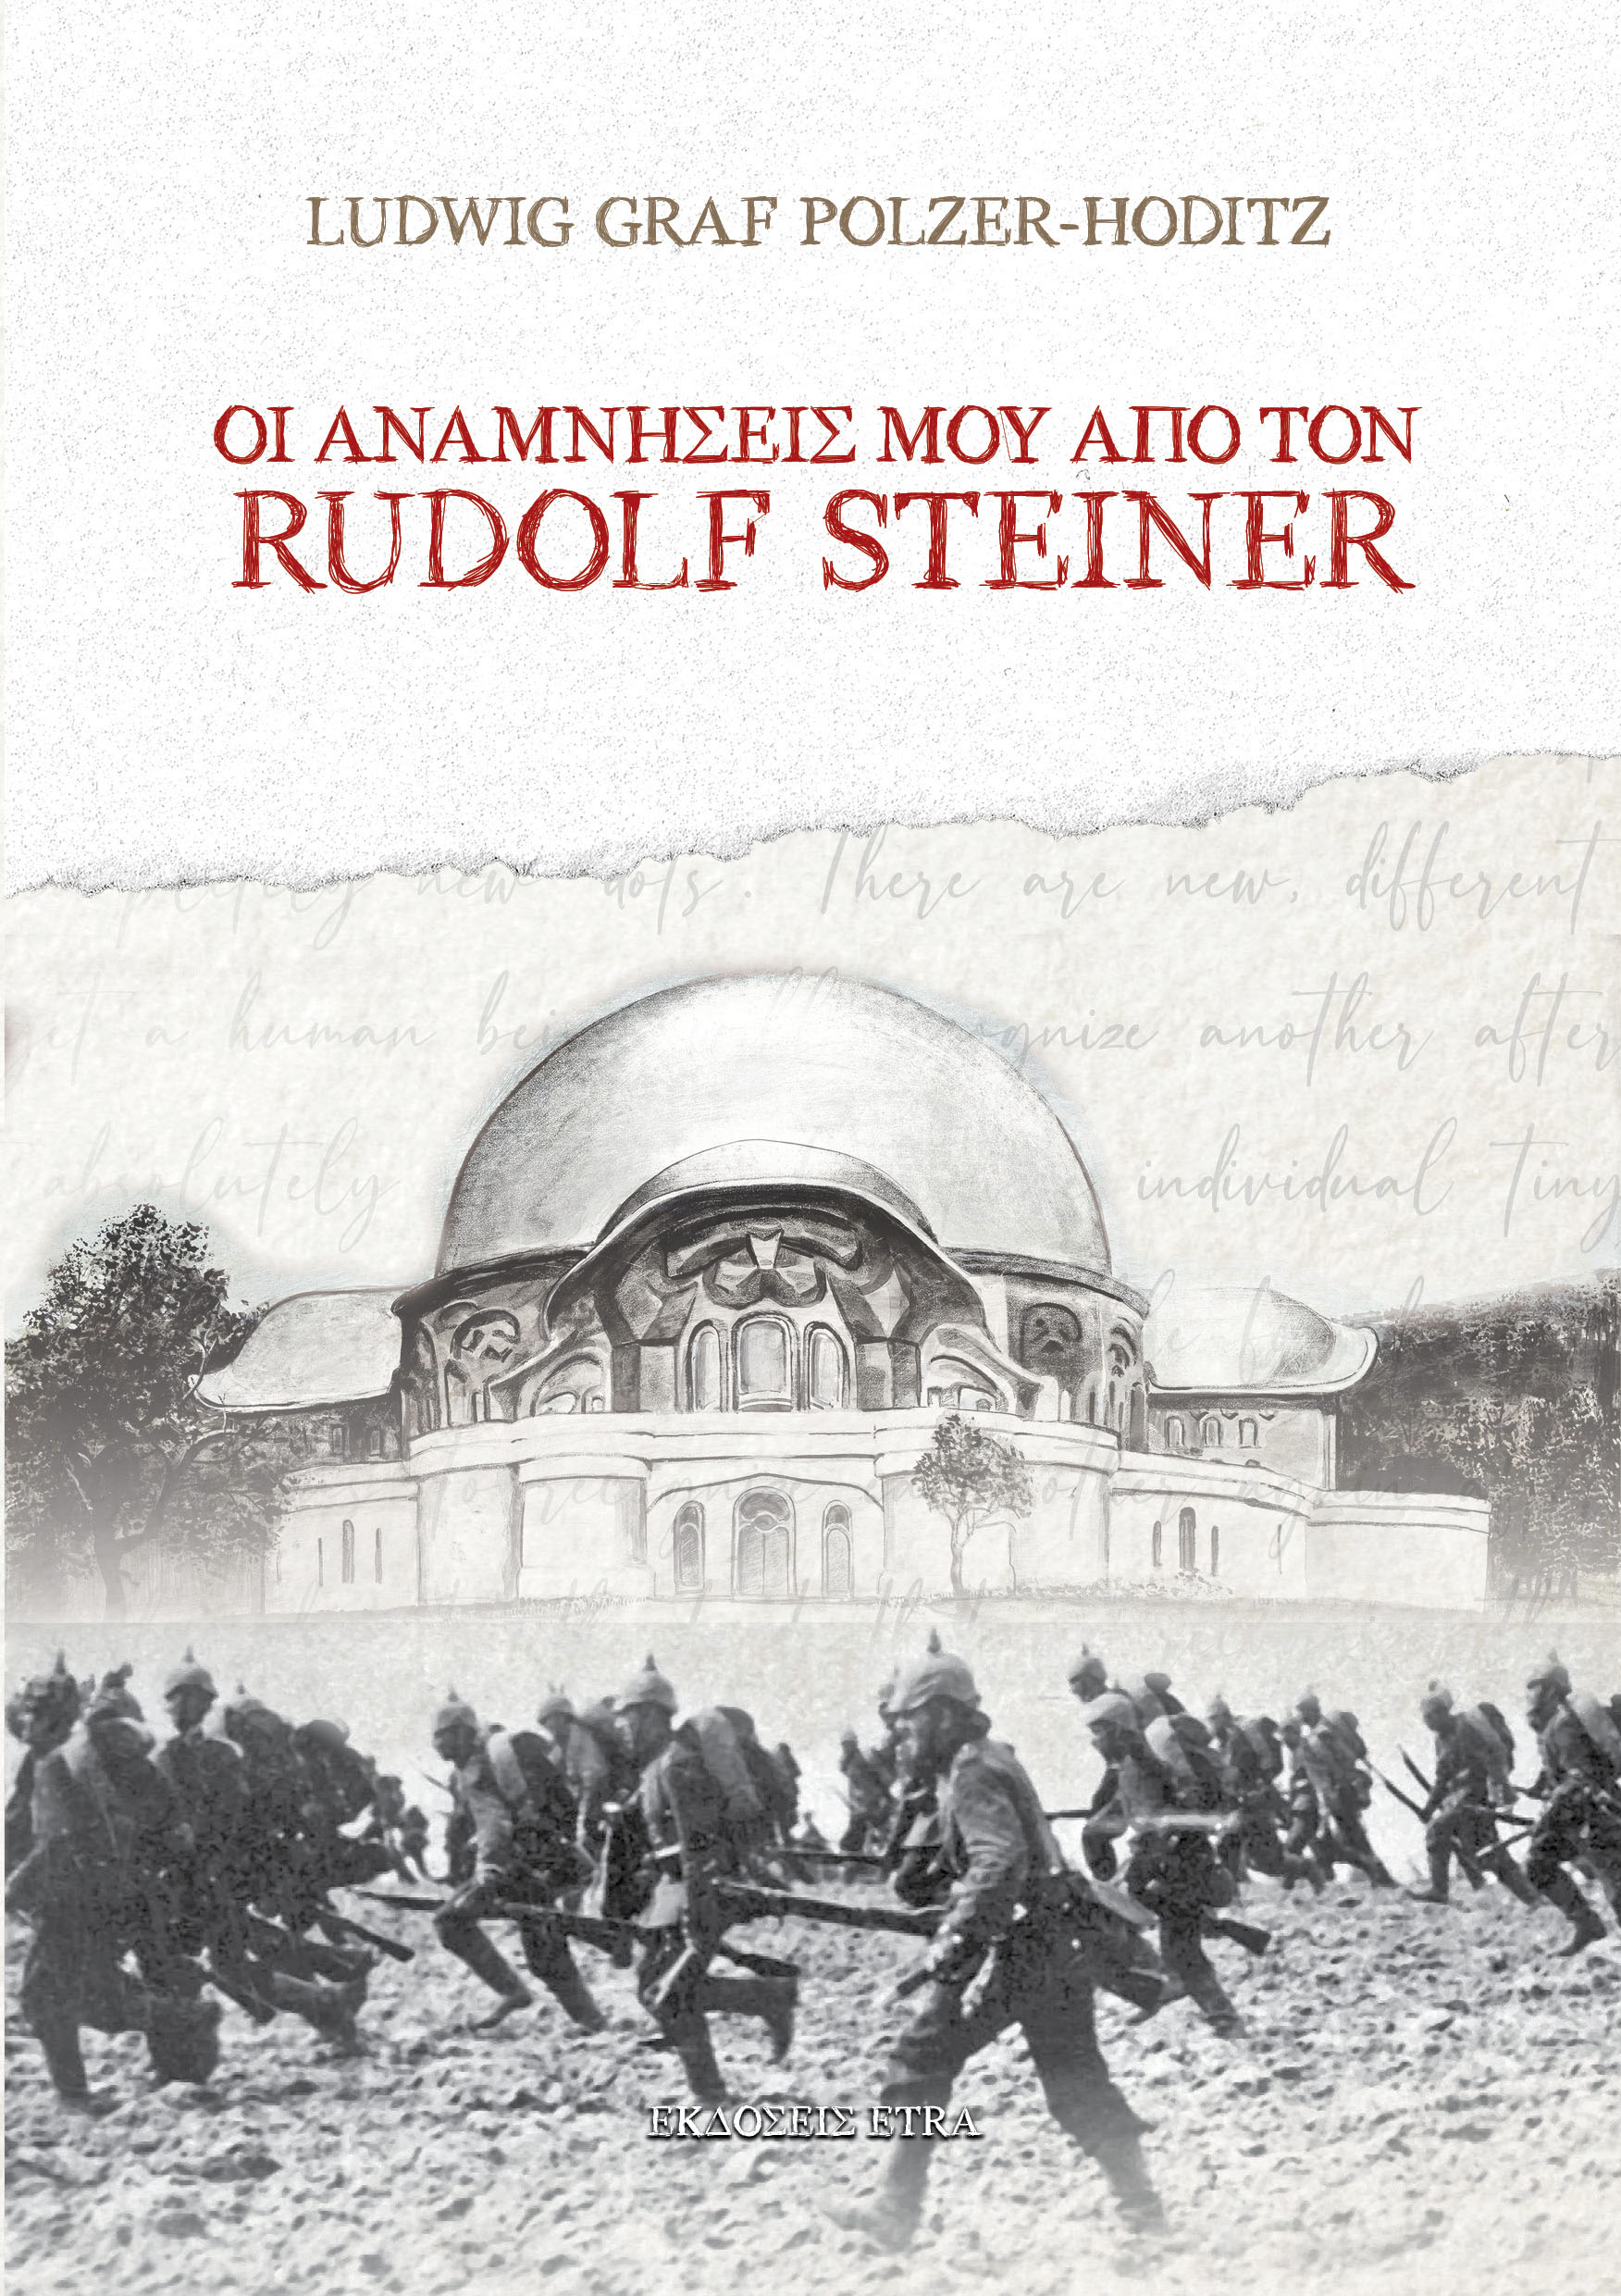      Rudolf Steiner